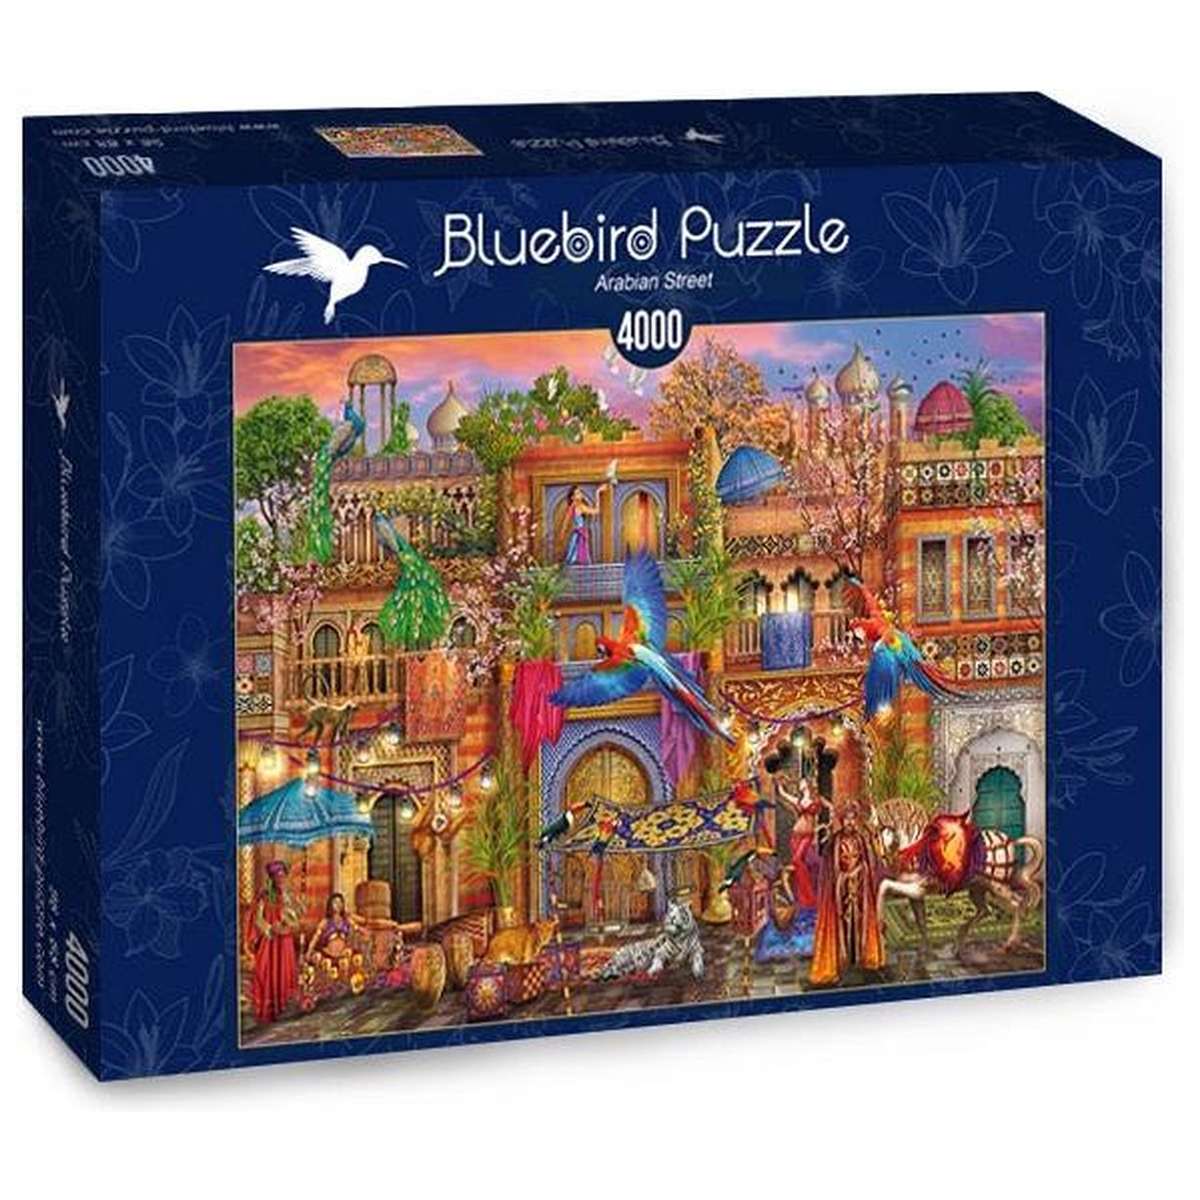 Puzzle Bluebird Calles de Arabia de 1000 piezas